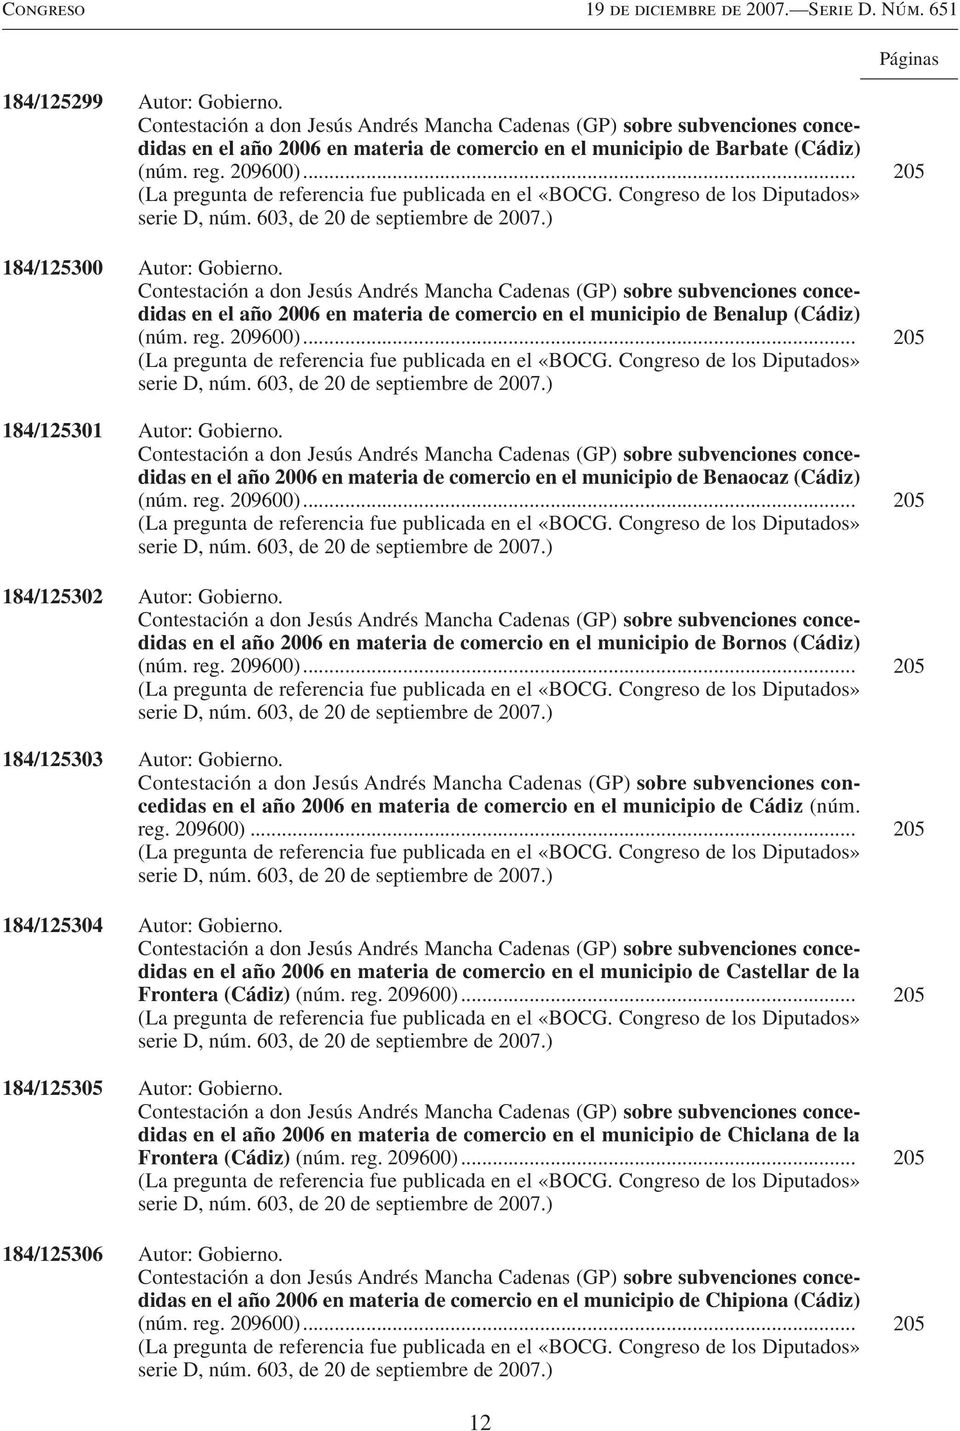 Contestación a don Jesús Andrés Mancha Cadenas (GP) sobre subvenciones concedidas en el año 2006 en materia de comercio en el municipio de Benalup (Cádiz) (núm. reg. 209600).